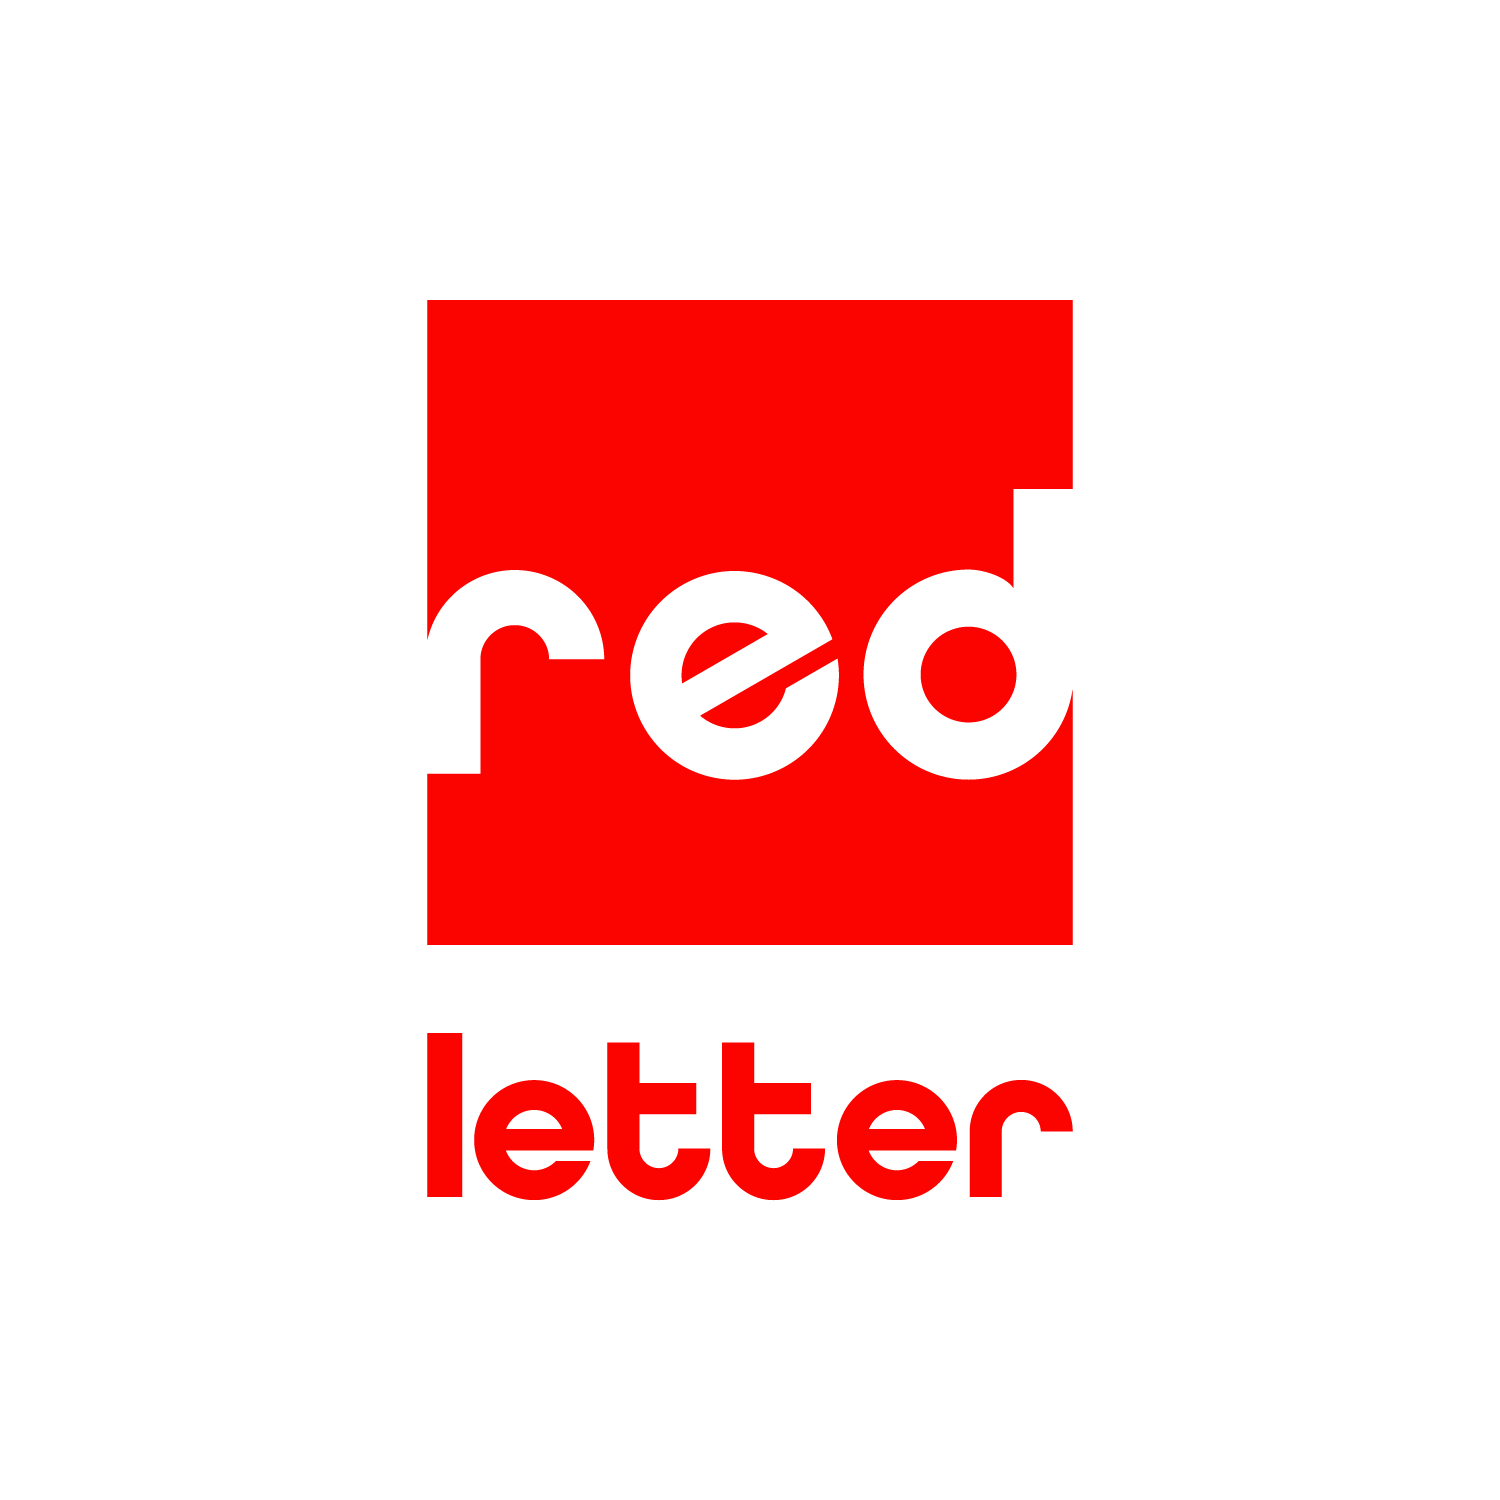 red letter logo